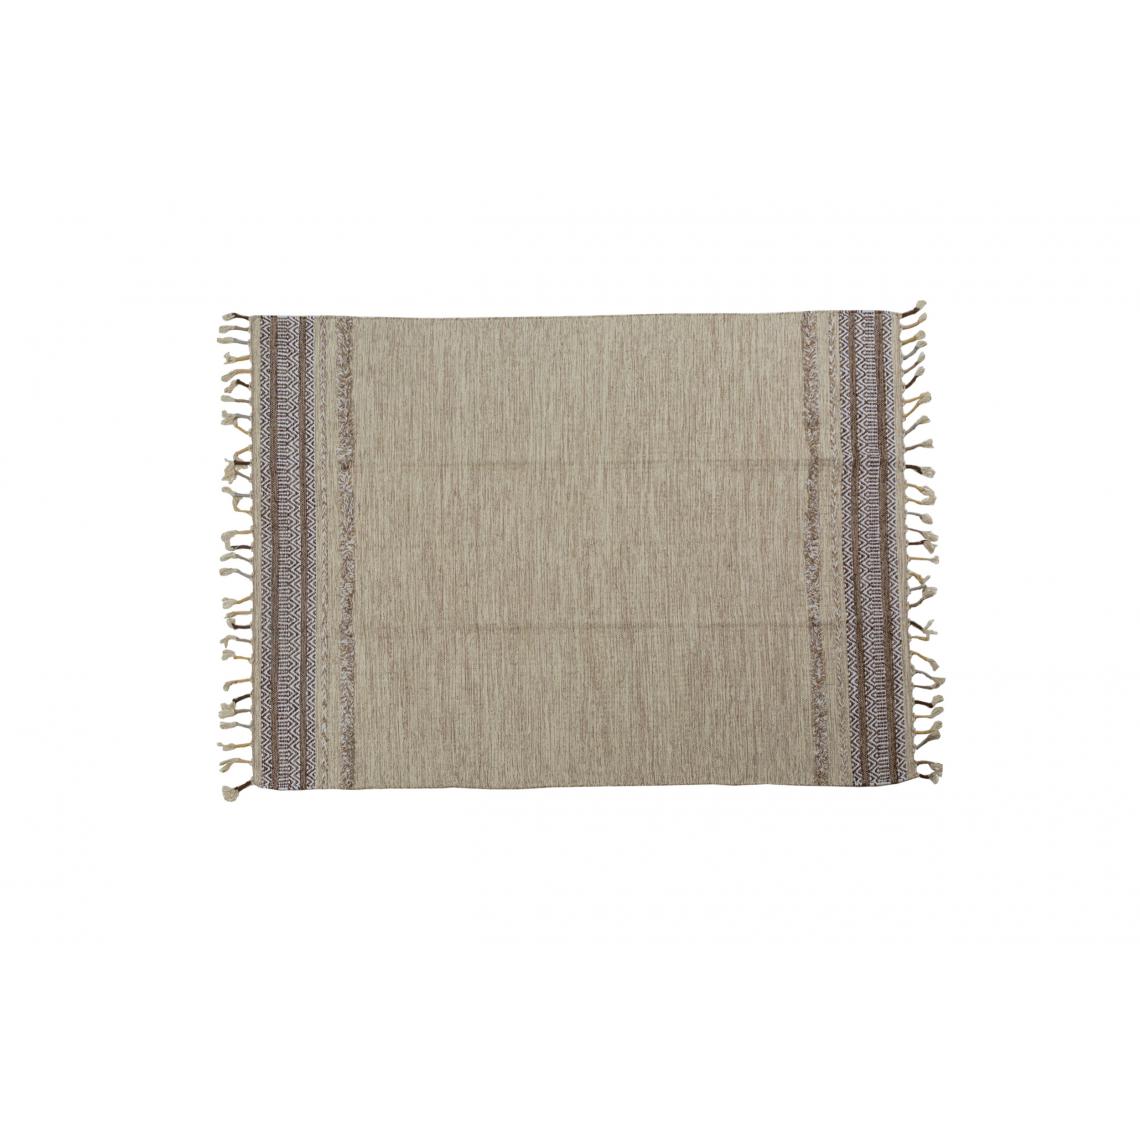 Alter - Tapis boston moderne, style kilim, 100% coton, beige, 230x160cm - Tapis